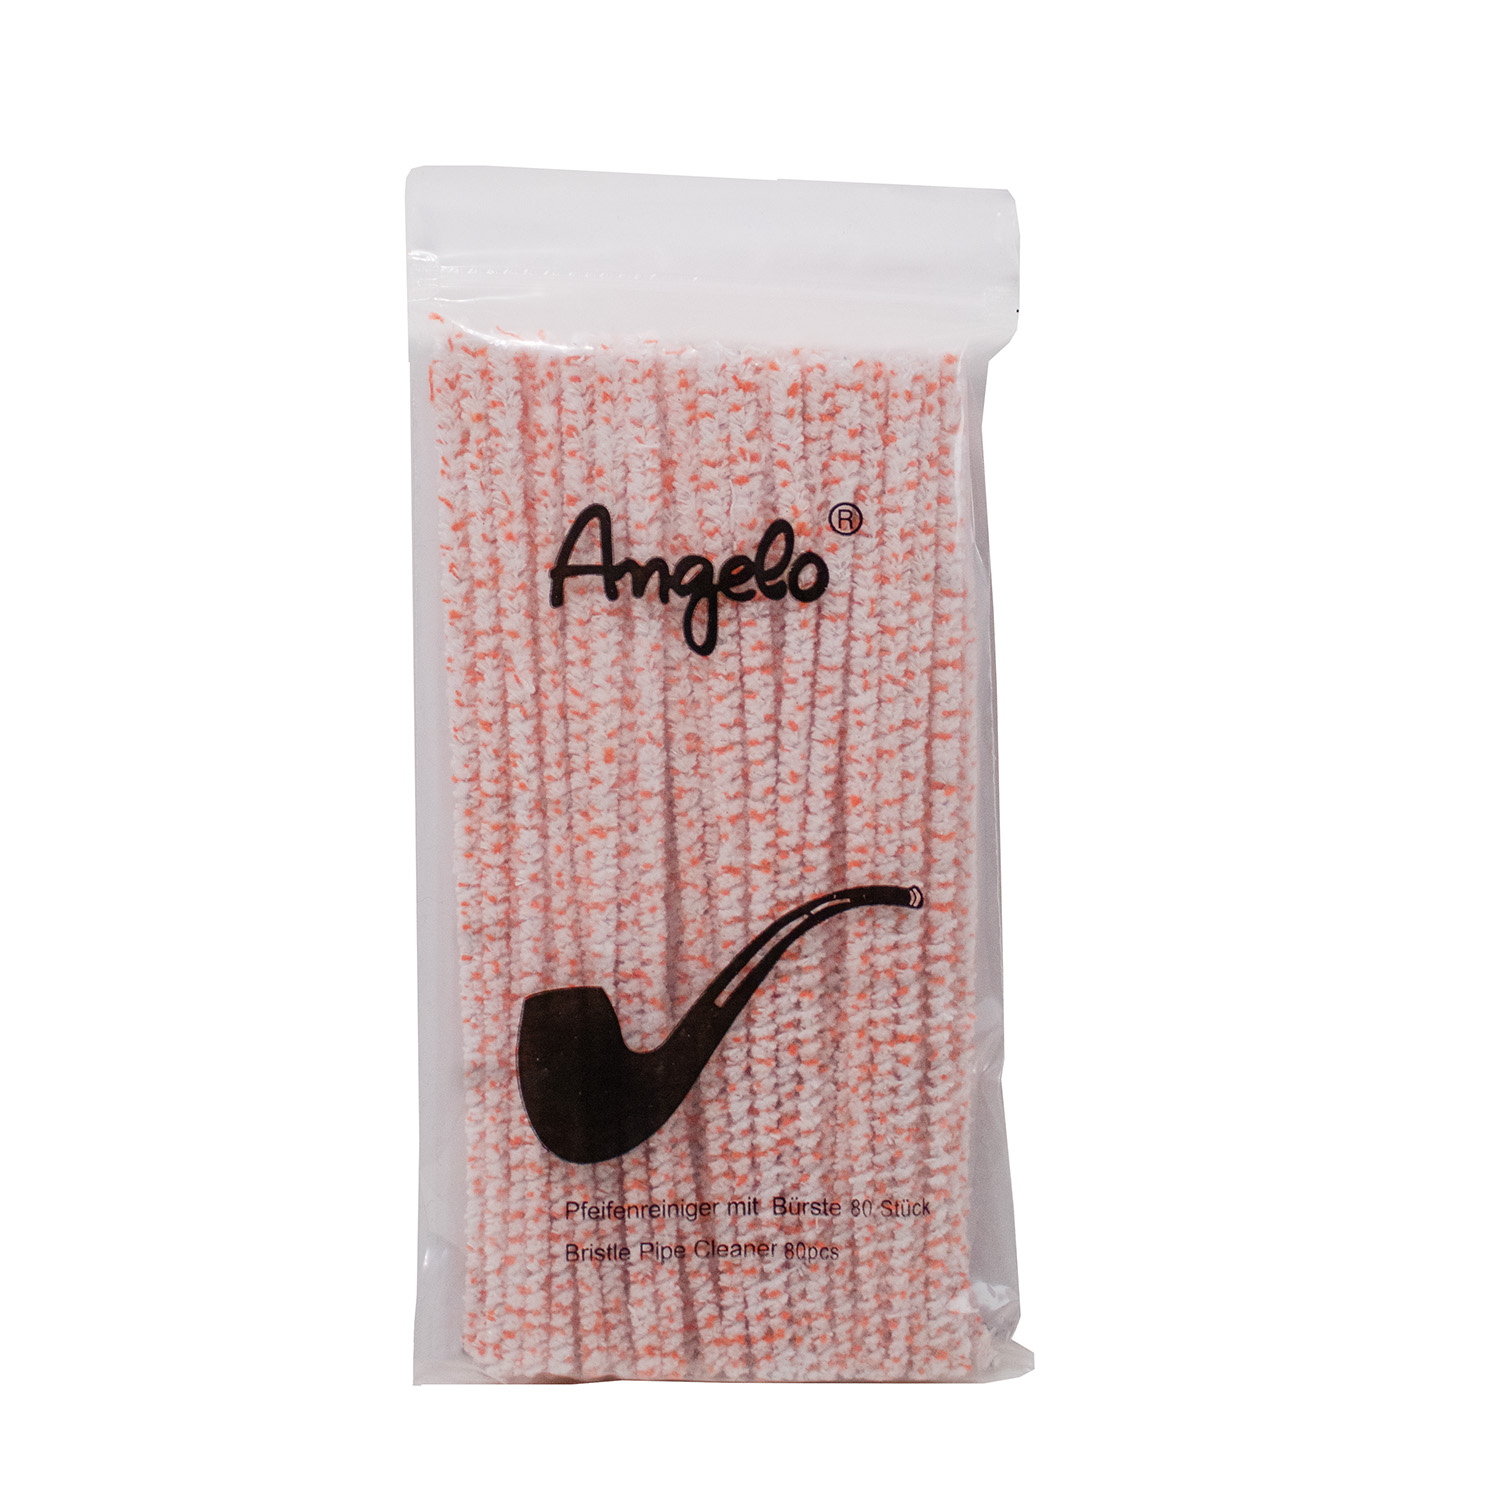 Angelo-Cleaner 1er